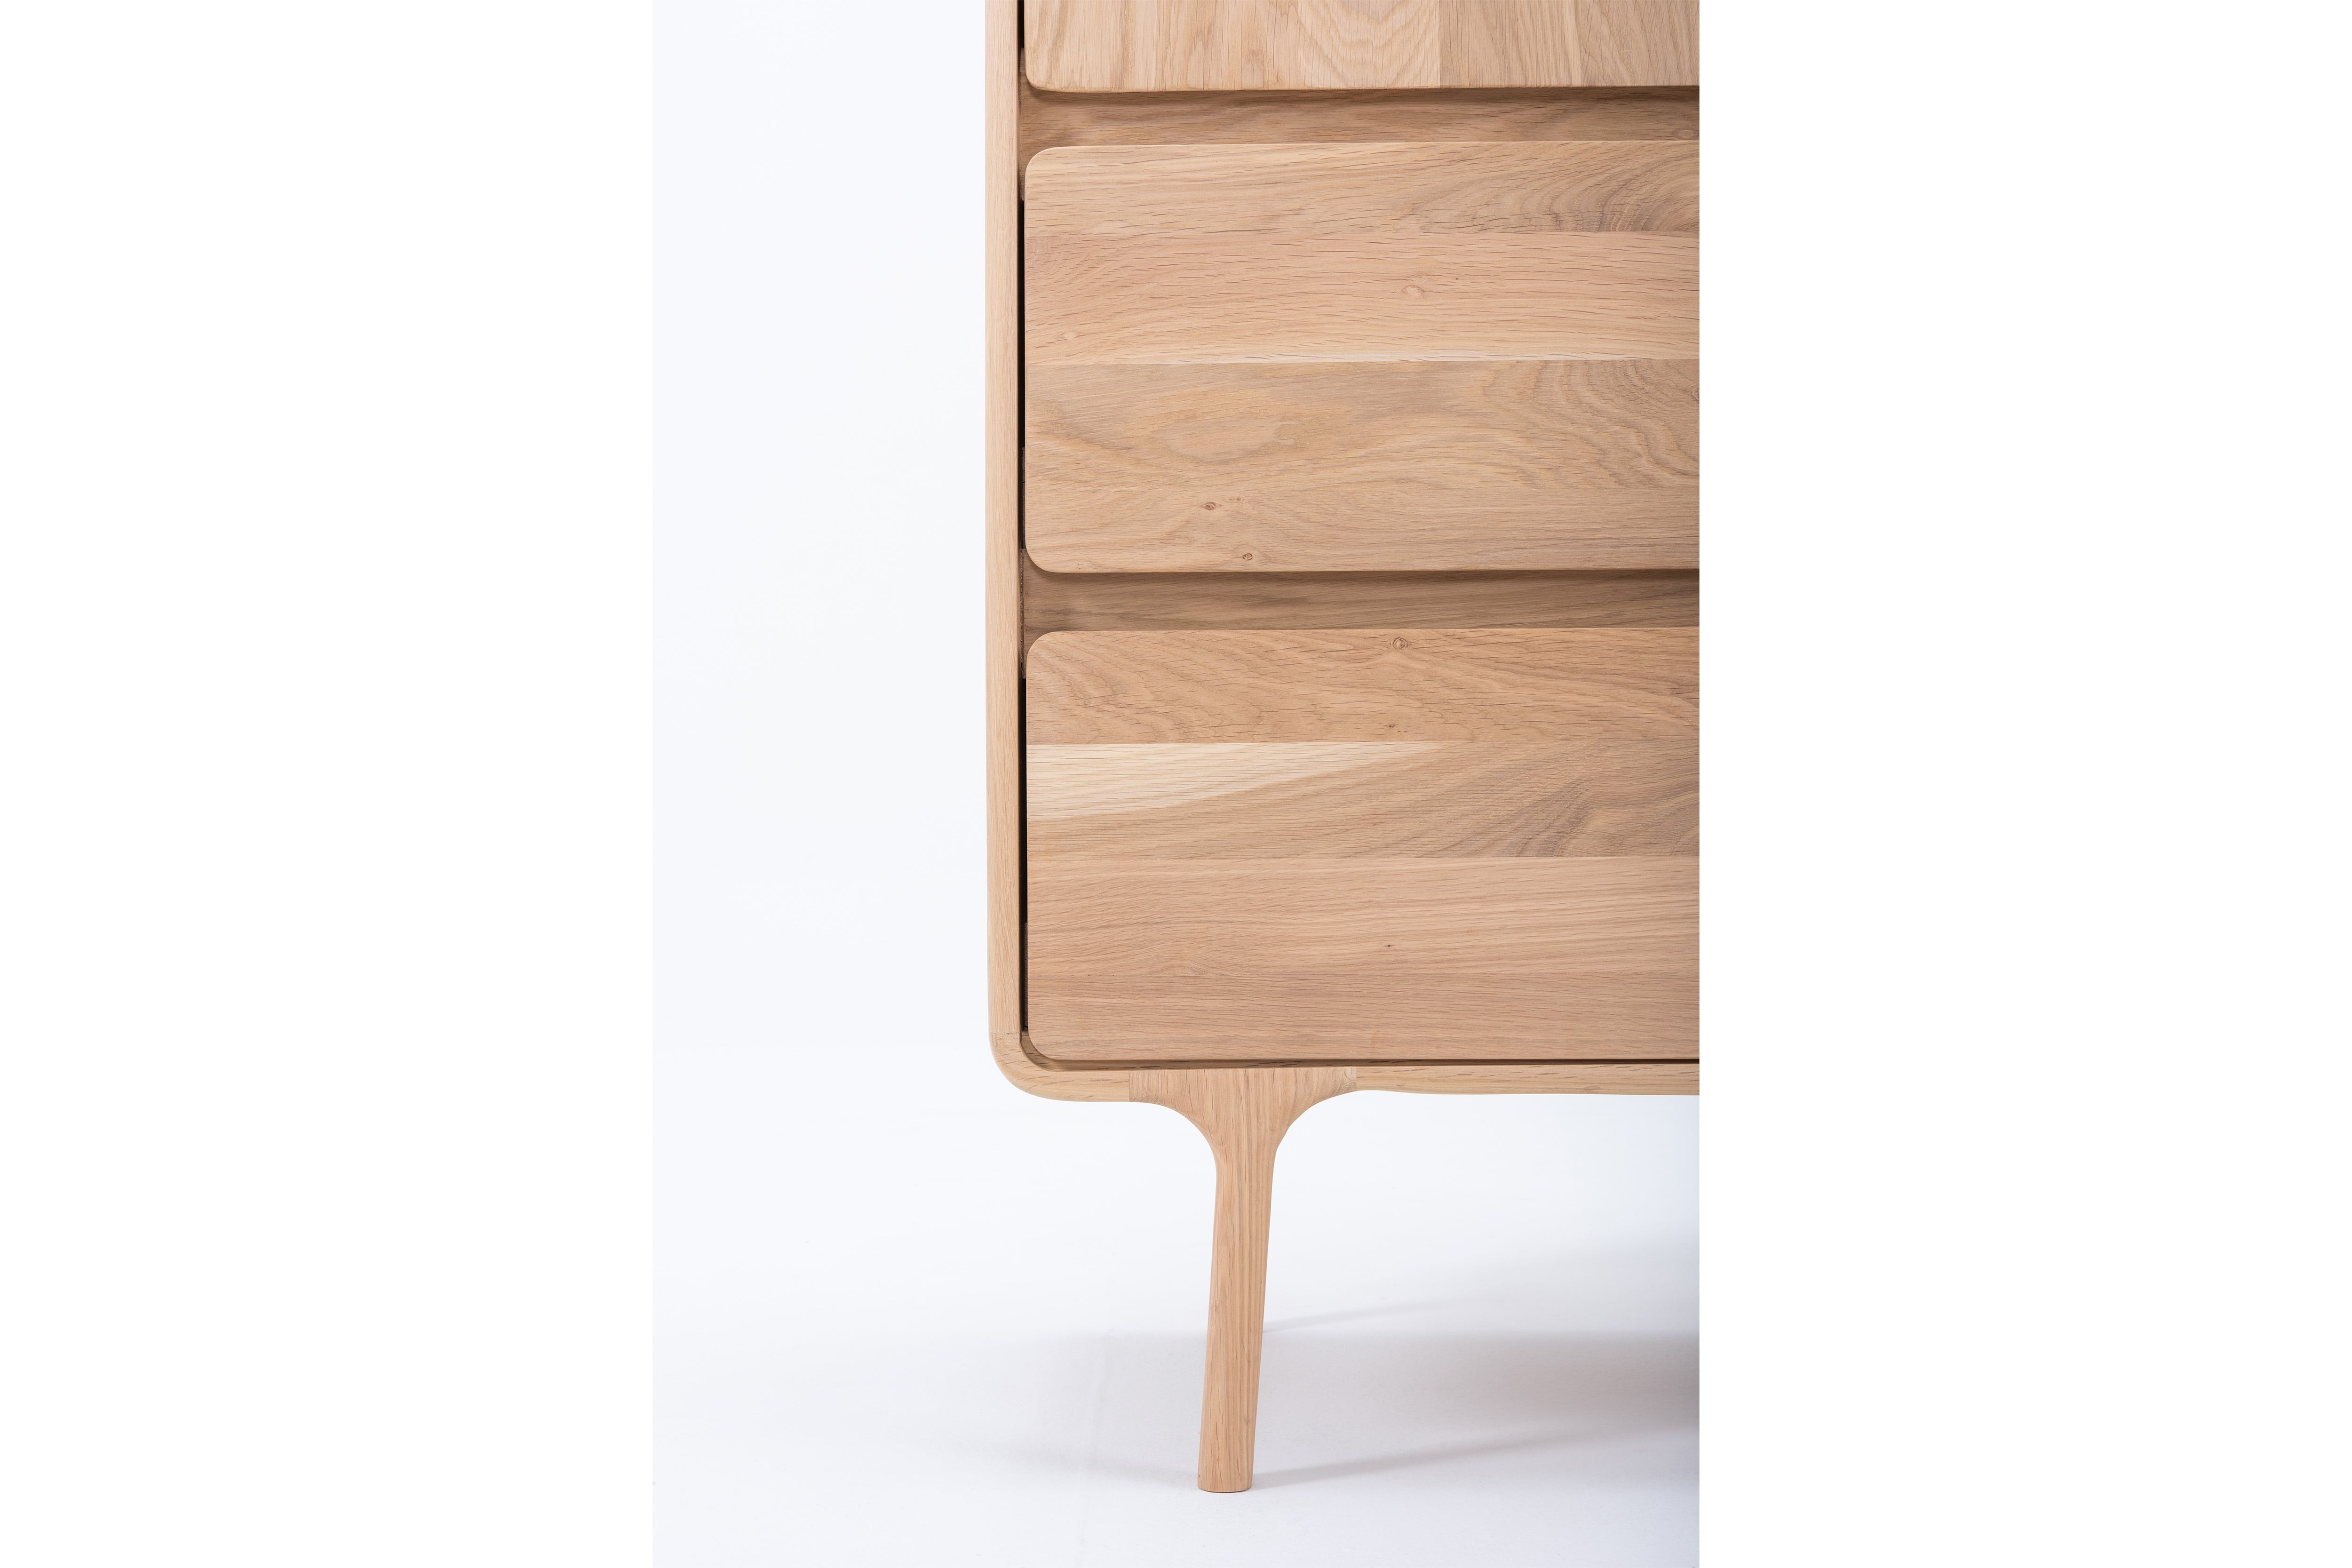 FAWN Massivholz Kleiderschrank - SOLIDMADE | Design Furniture